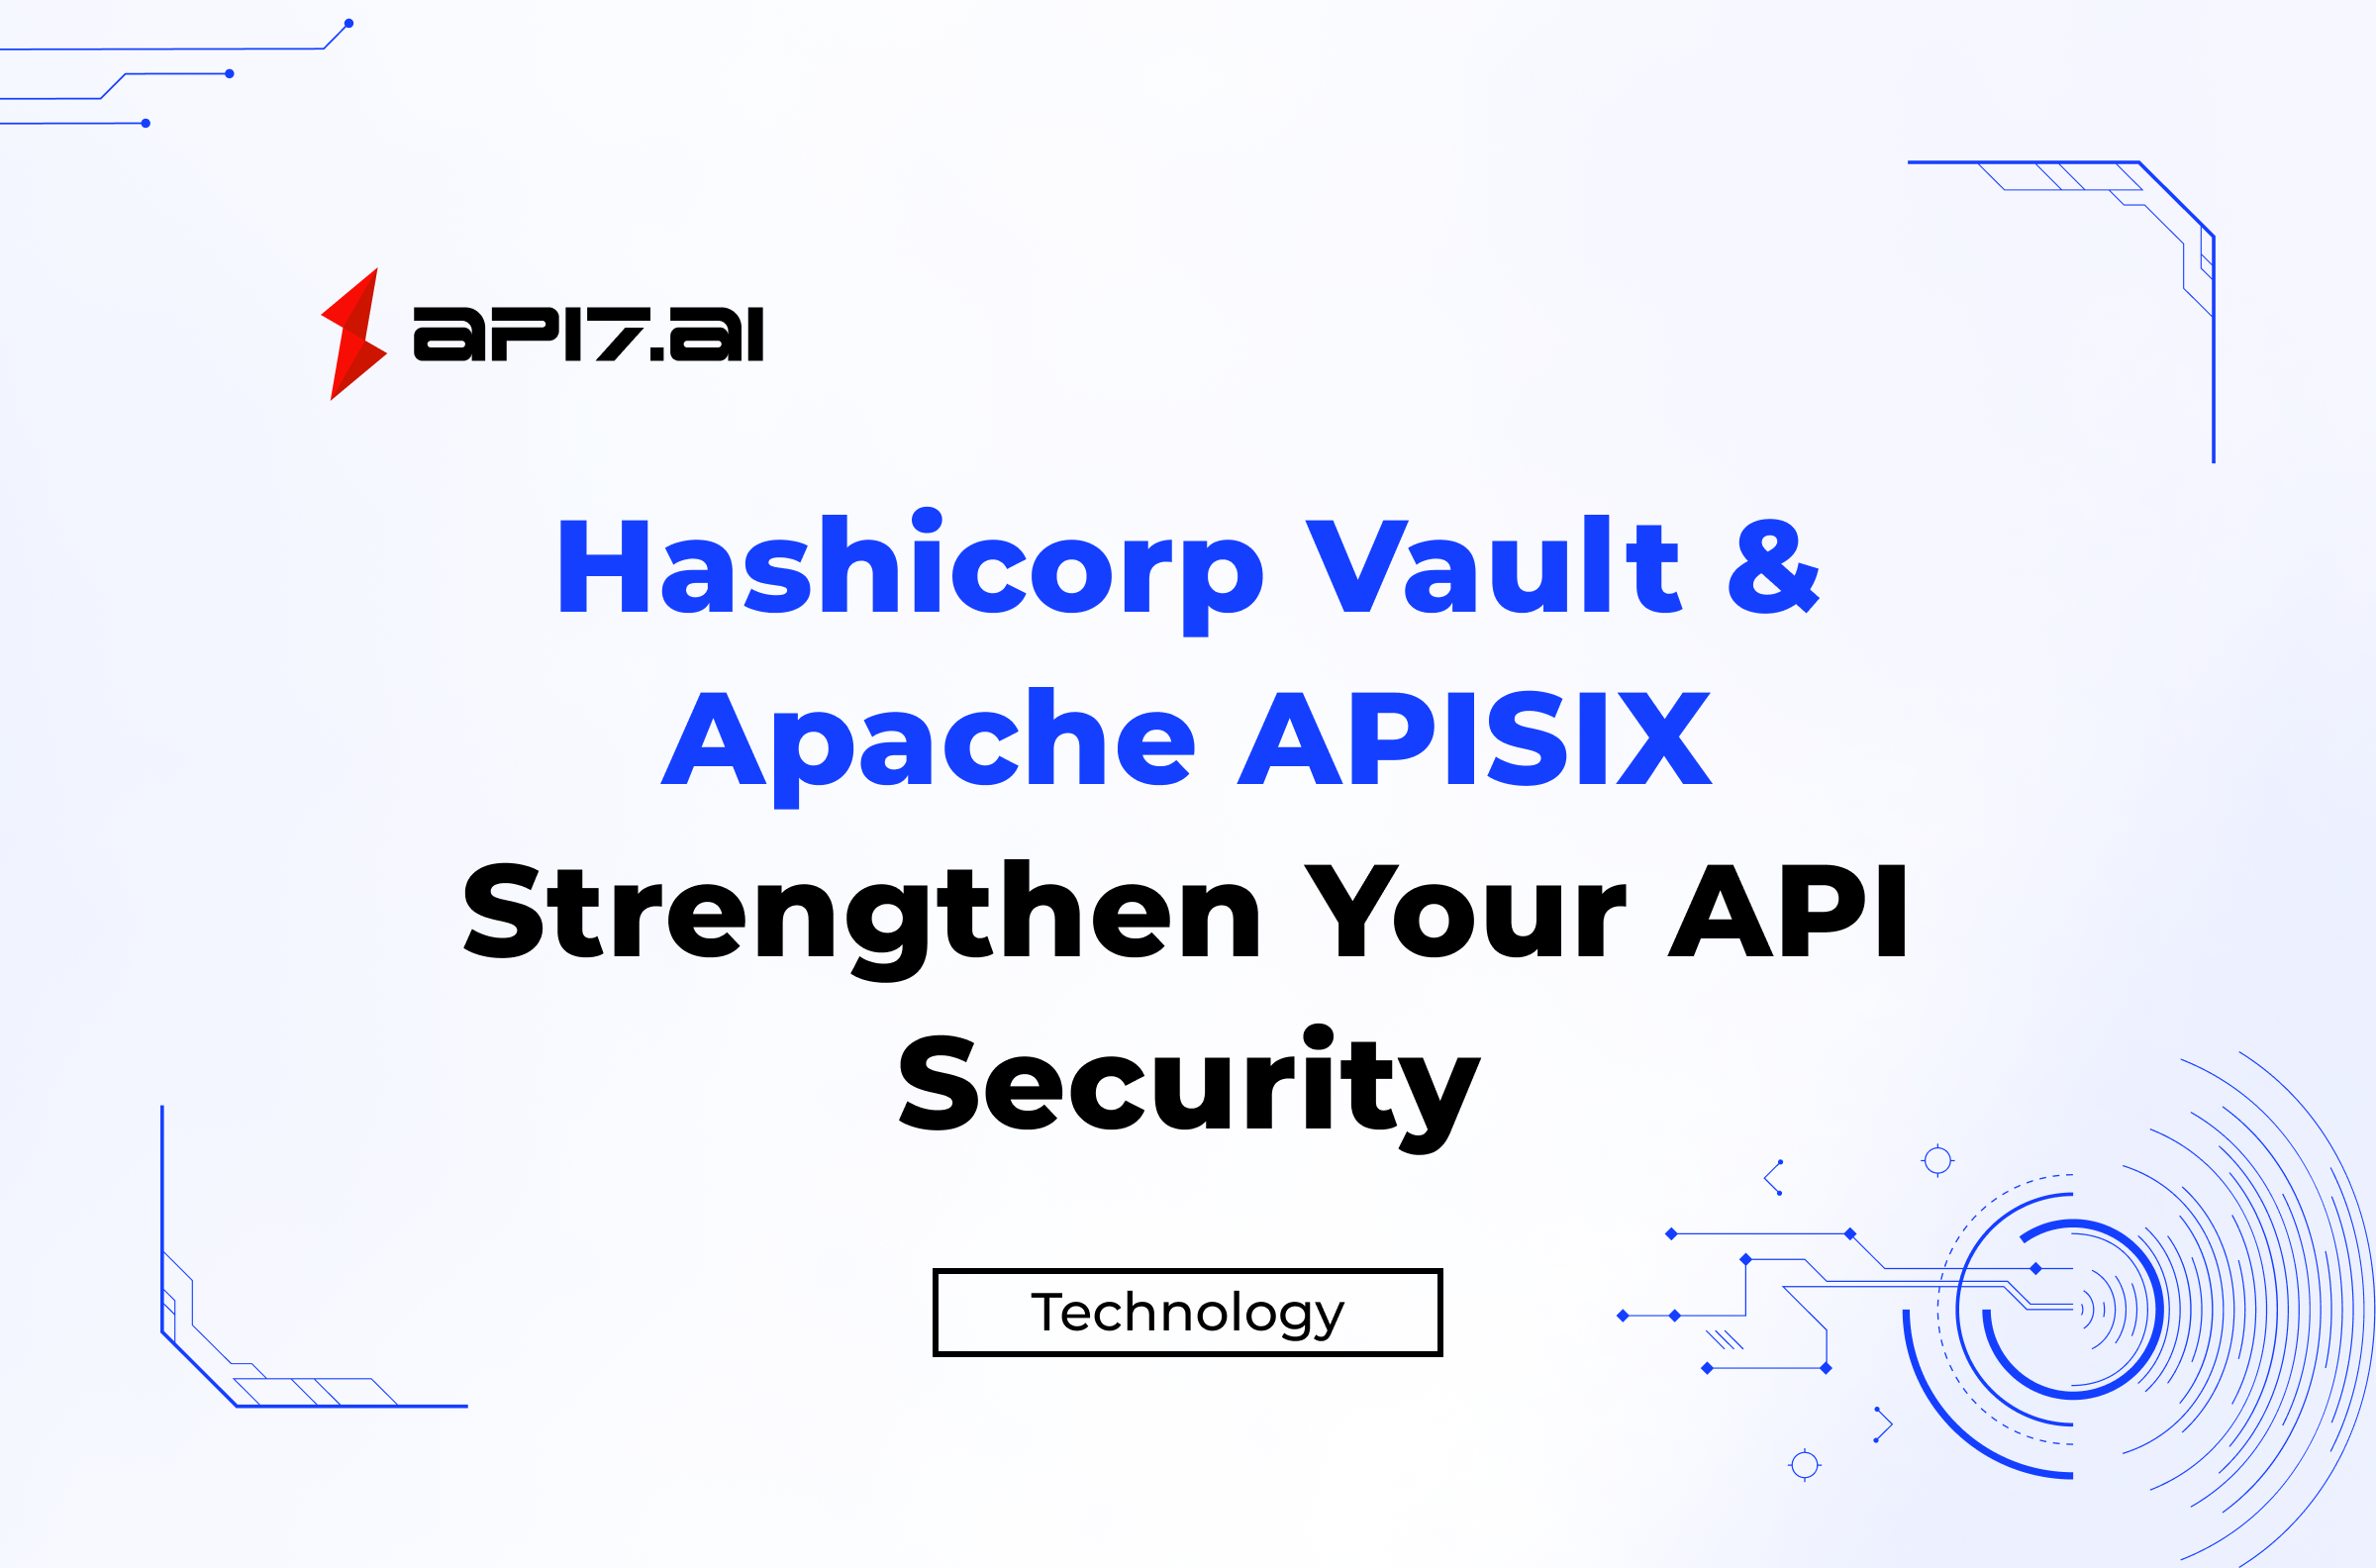 Hashicorp Vault & Apache APISIX: Strengthen Your API Security